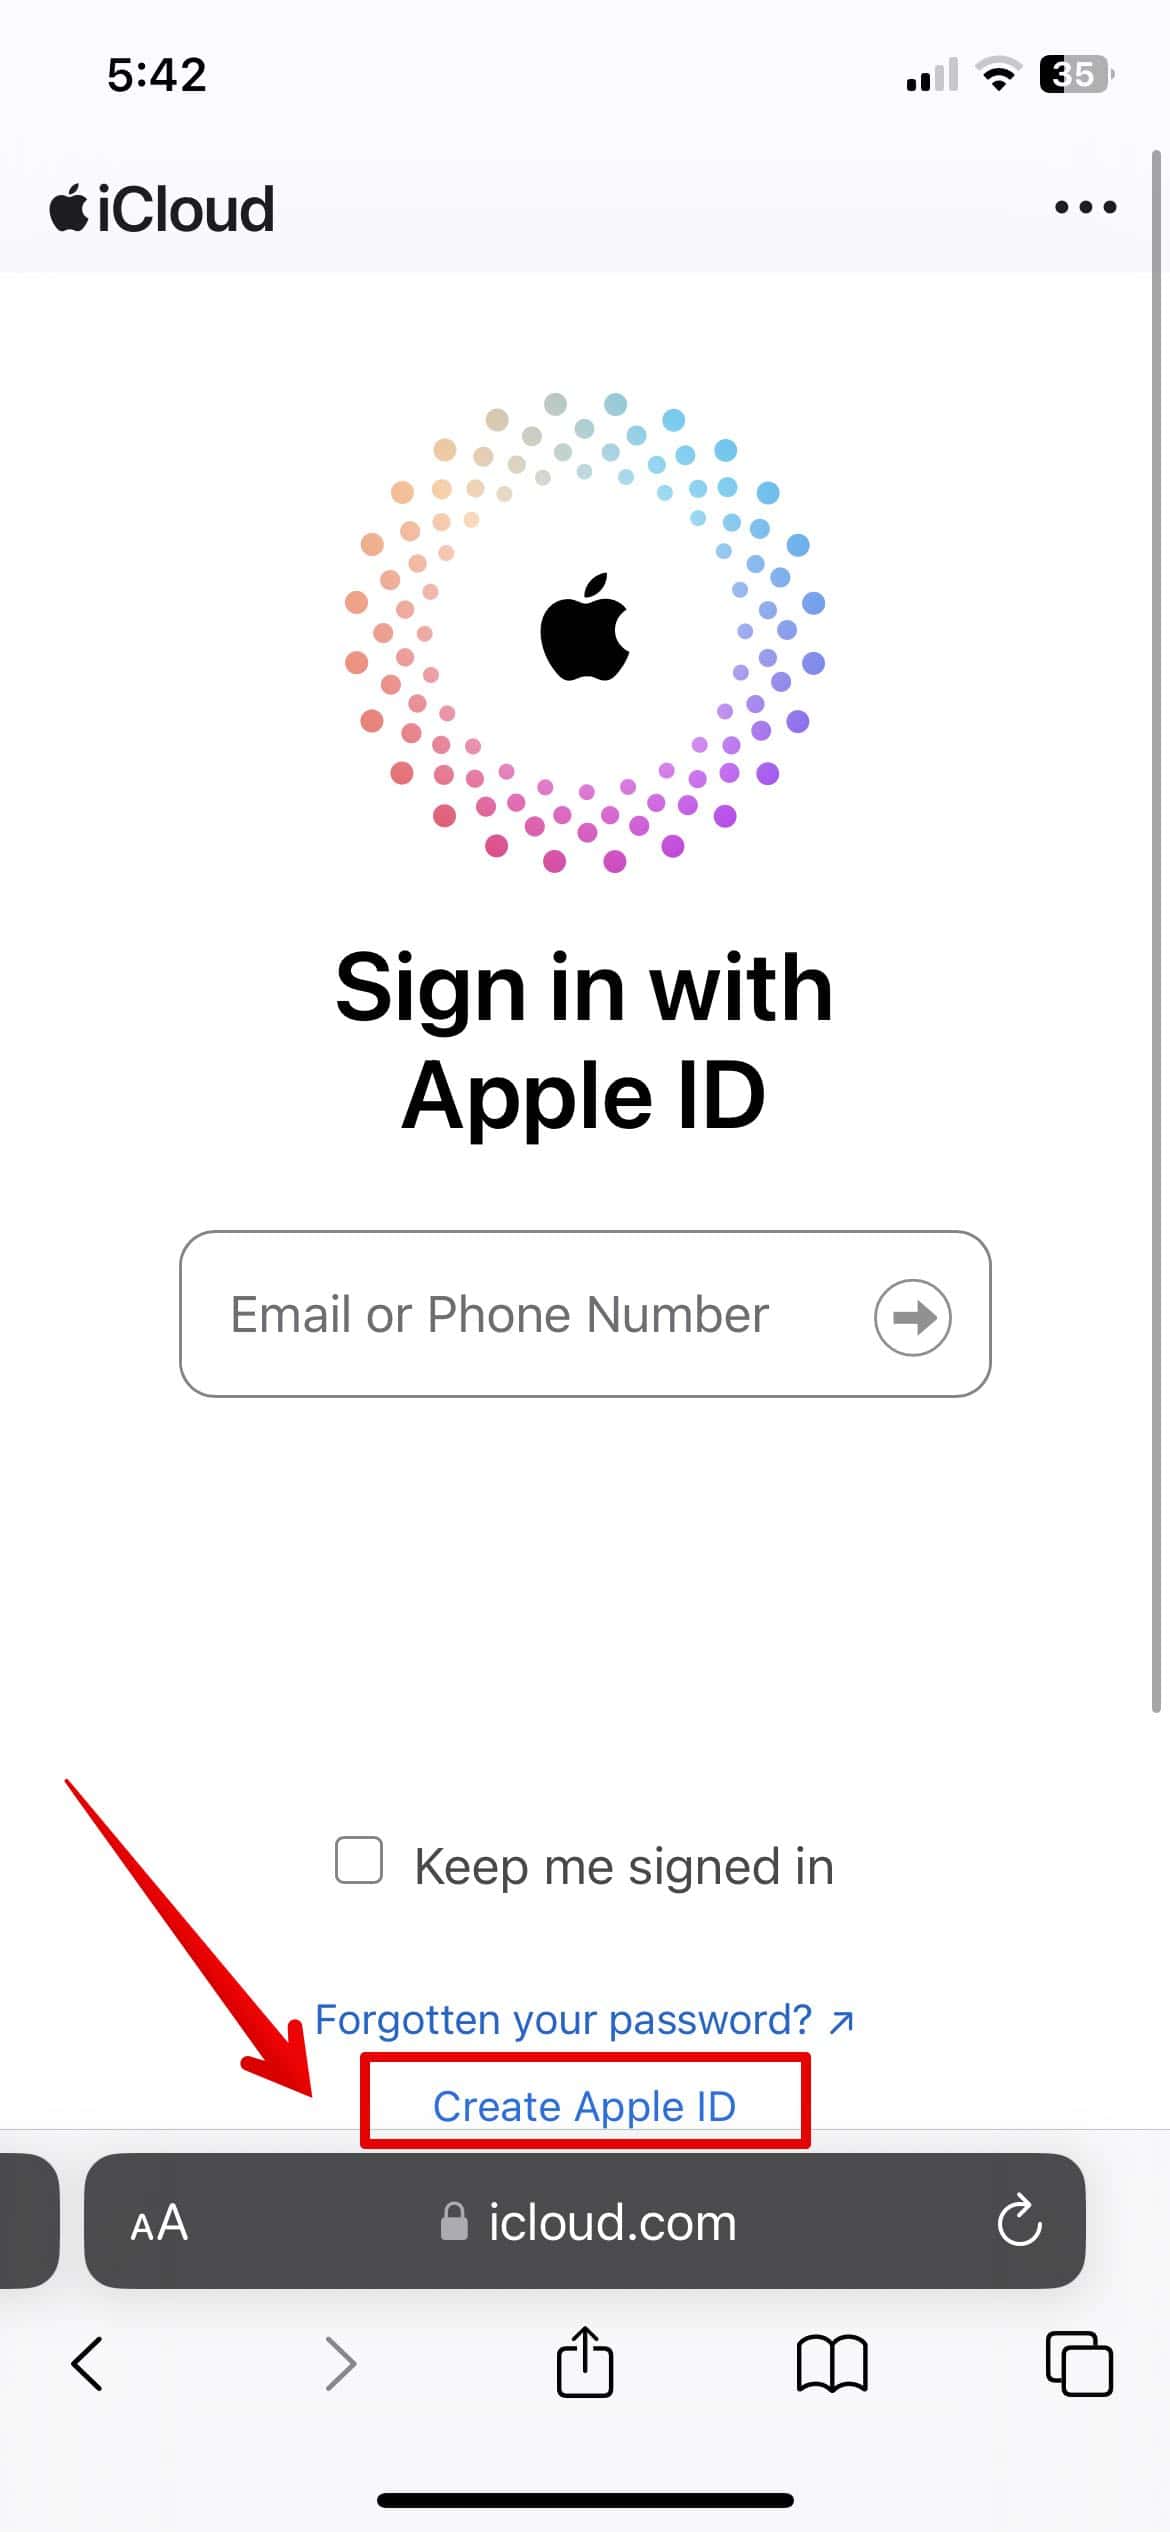 Нажмите «Создать Apple ID».